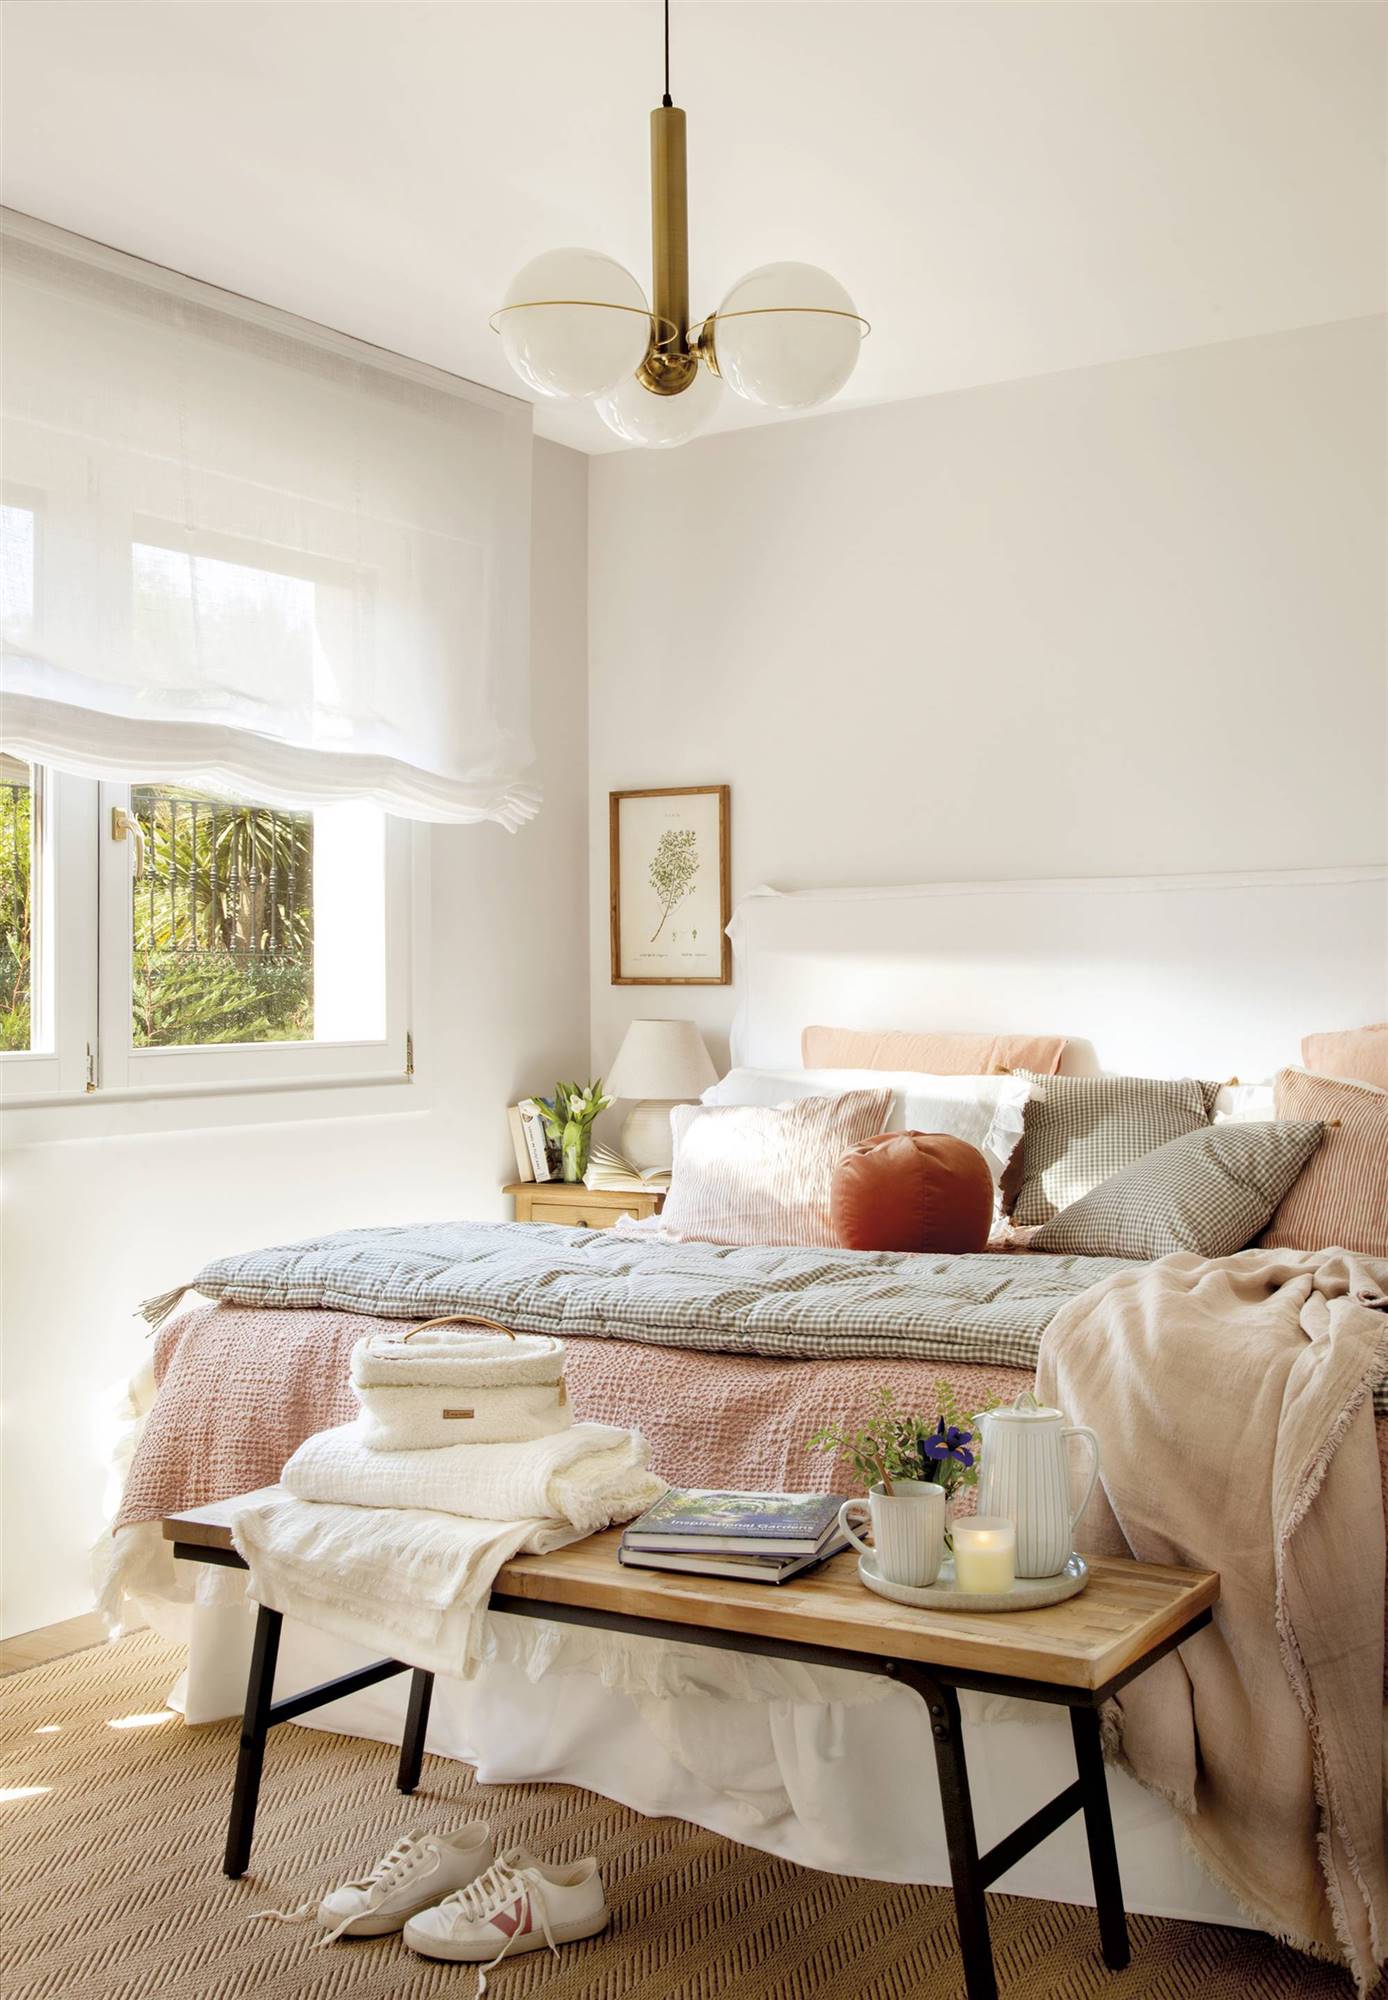 Dormitorio con cama de color blanco, estores blancos, lámpara de techo con bolas, ropa de cama en tonos rosados y banco a los pies 00546300